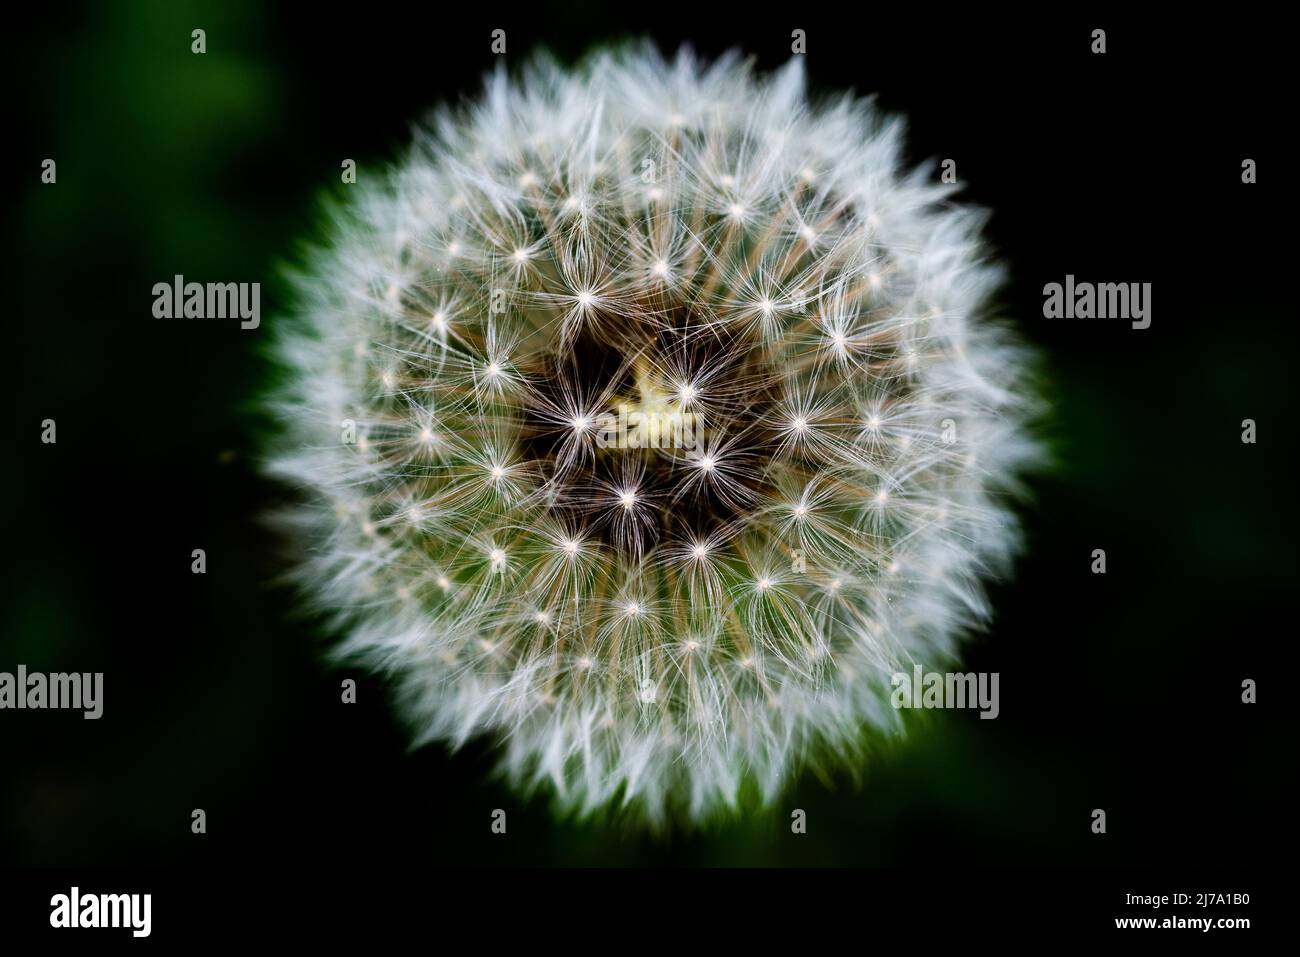 Pusteblume (Löwenzahn) auf einer Blumenwiese - a dandelion blowball on a lawn Stock Photo